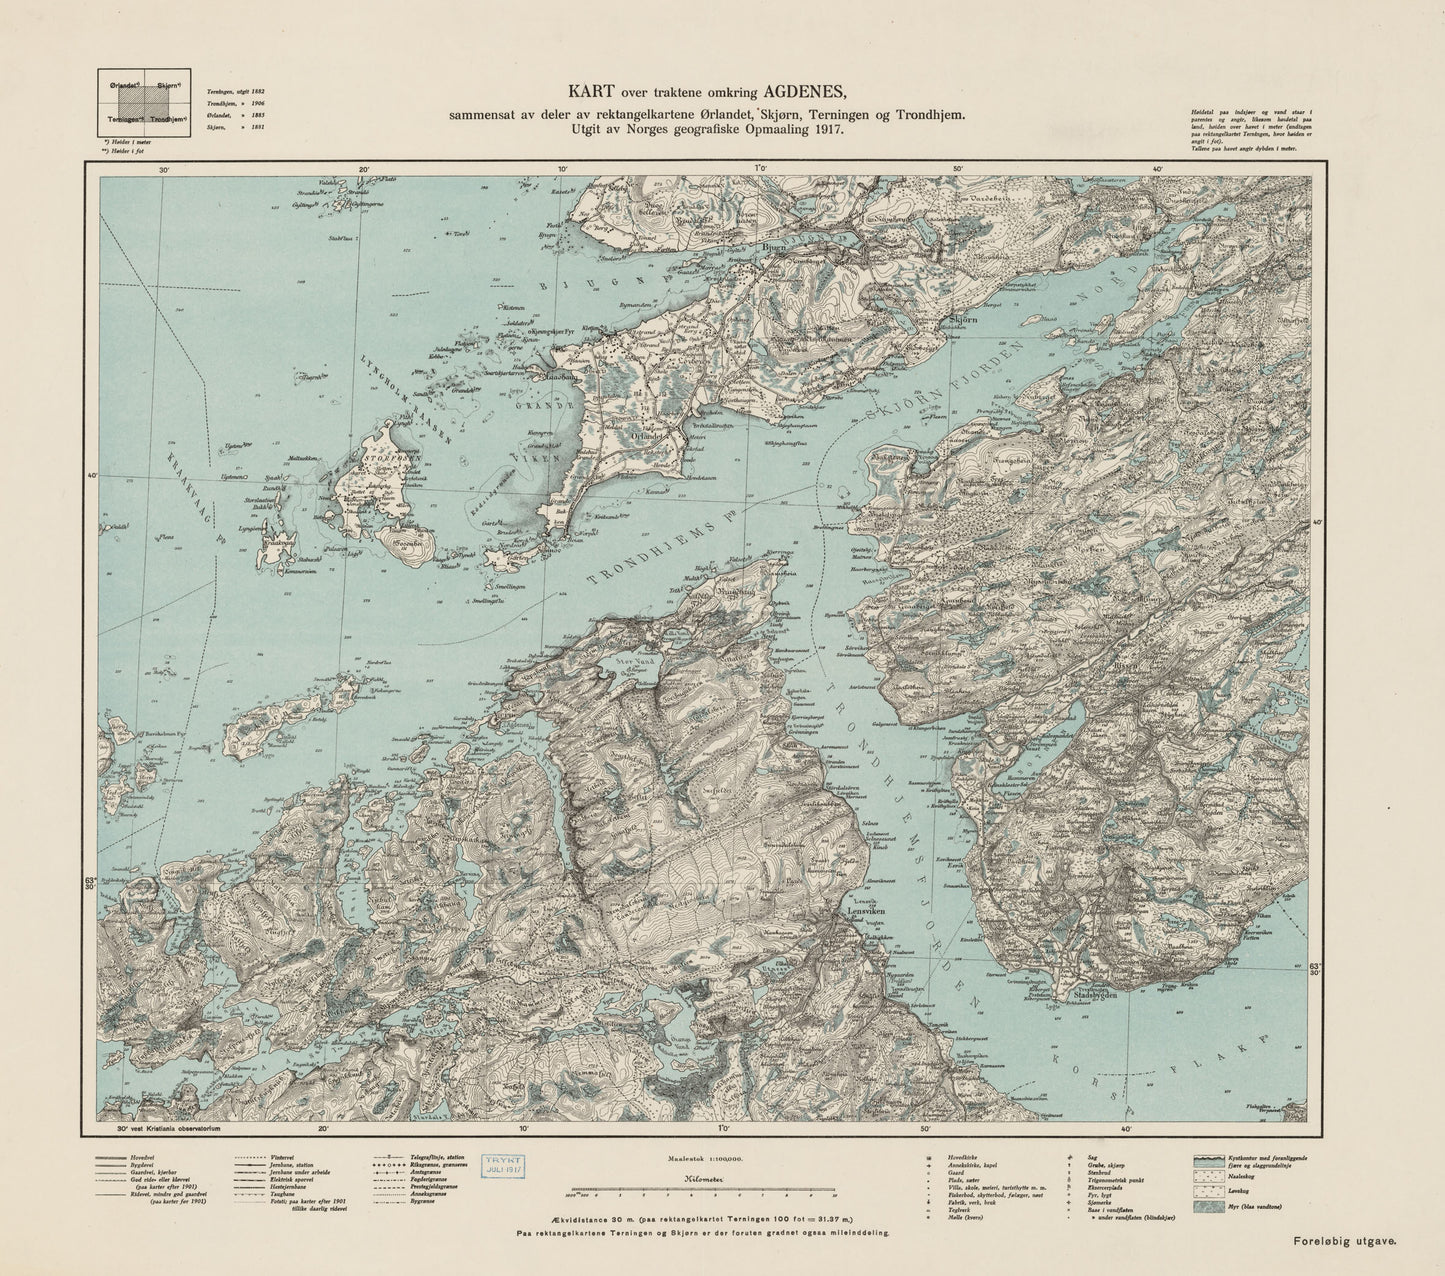 Ekserserplasskart; Kart over traktene omkring Agdenes: Sør-Trøndelag